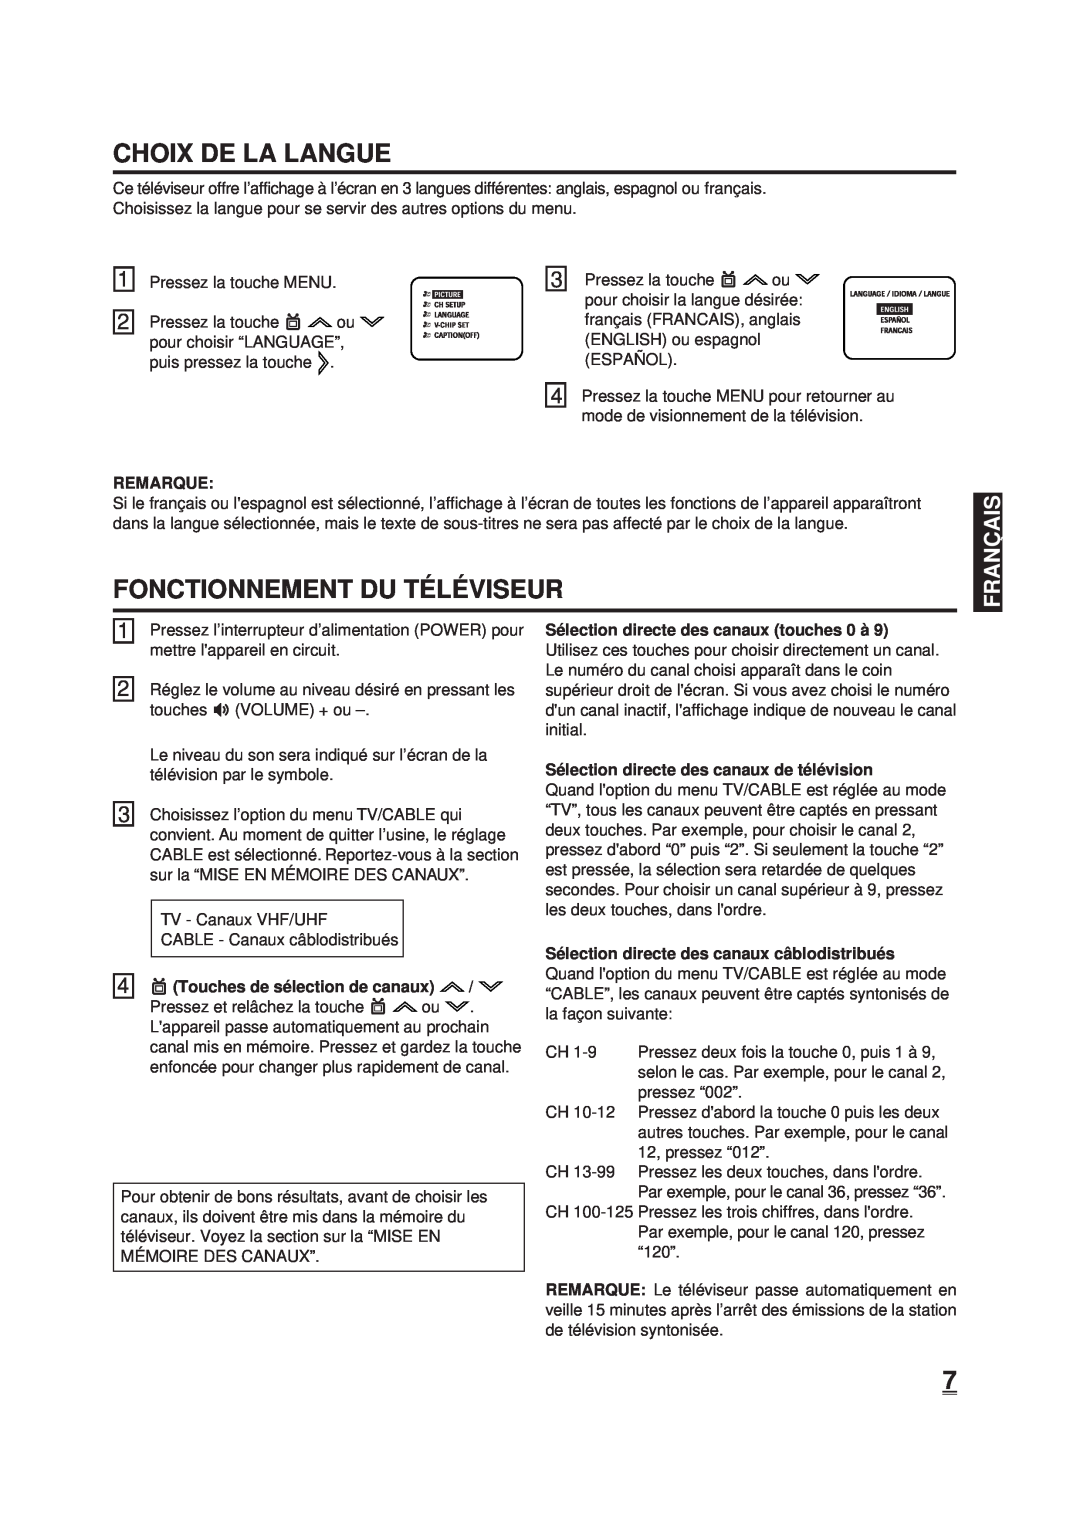 Memorex DT1900-C manual Choix De La Langue, Fonctionnement Du Té Lé Viseur, Pressez la touche MENU, Pressez la touche ou 